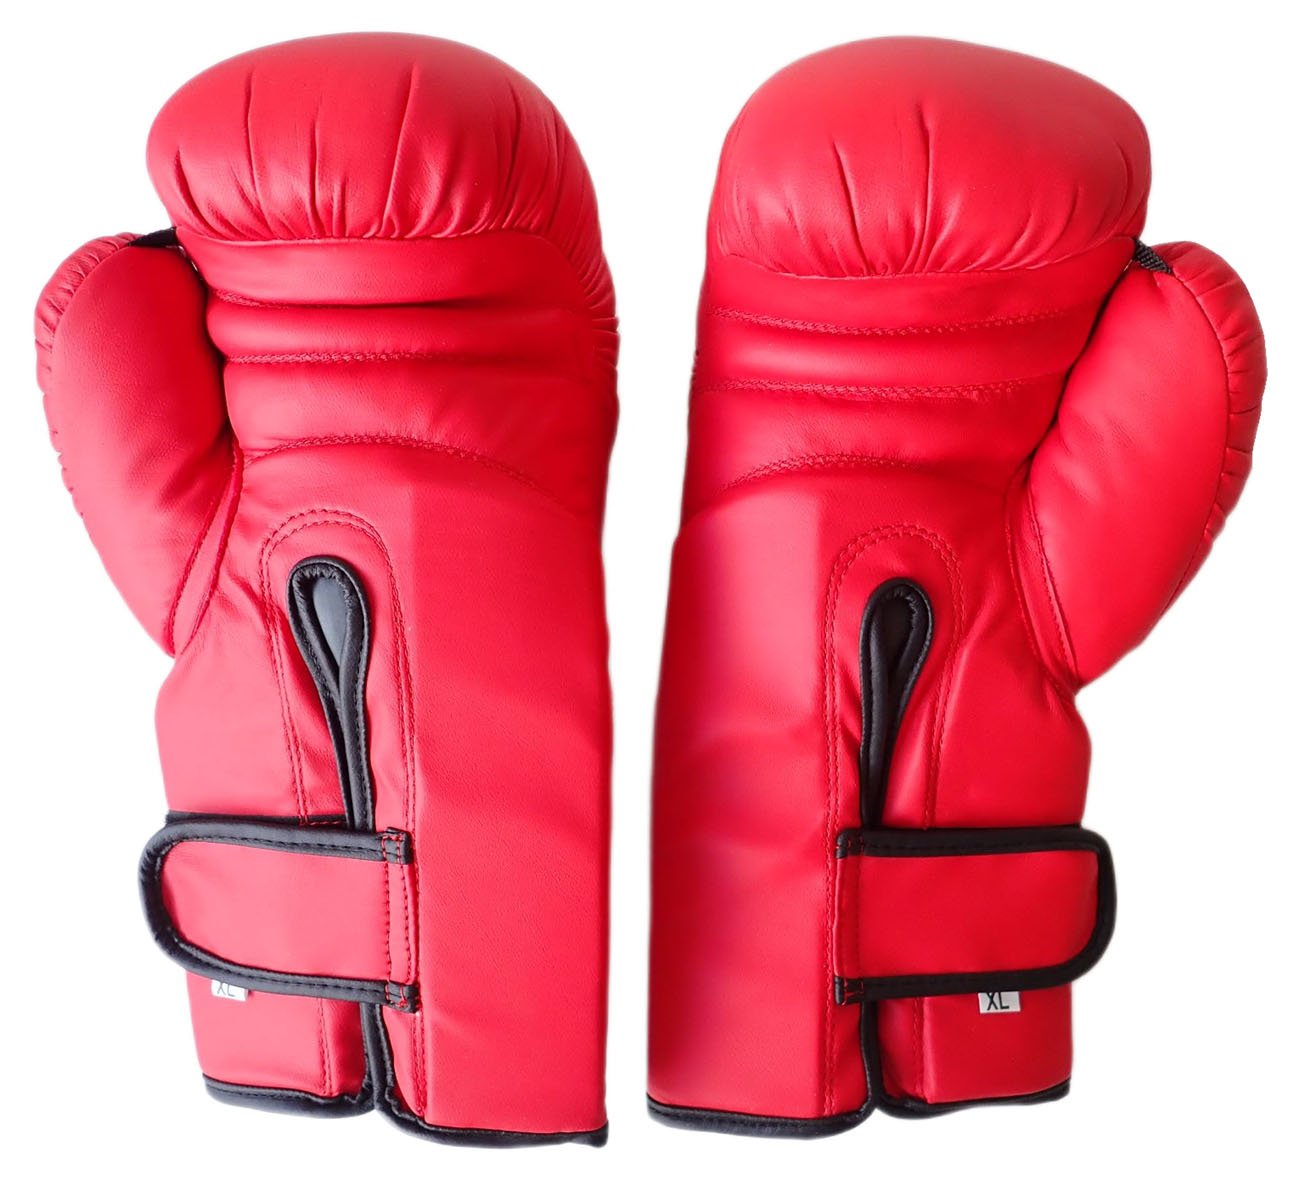 Boxerské rukavice PU kůže vel.XL, 14 oz.